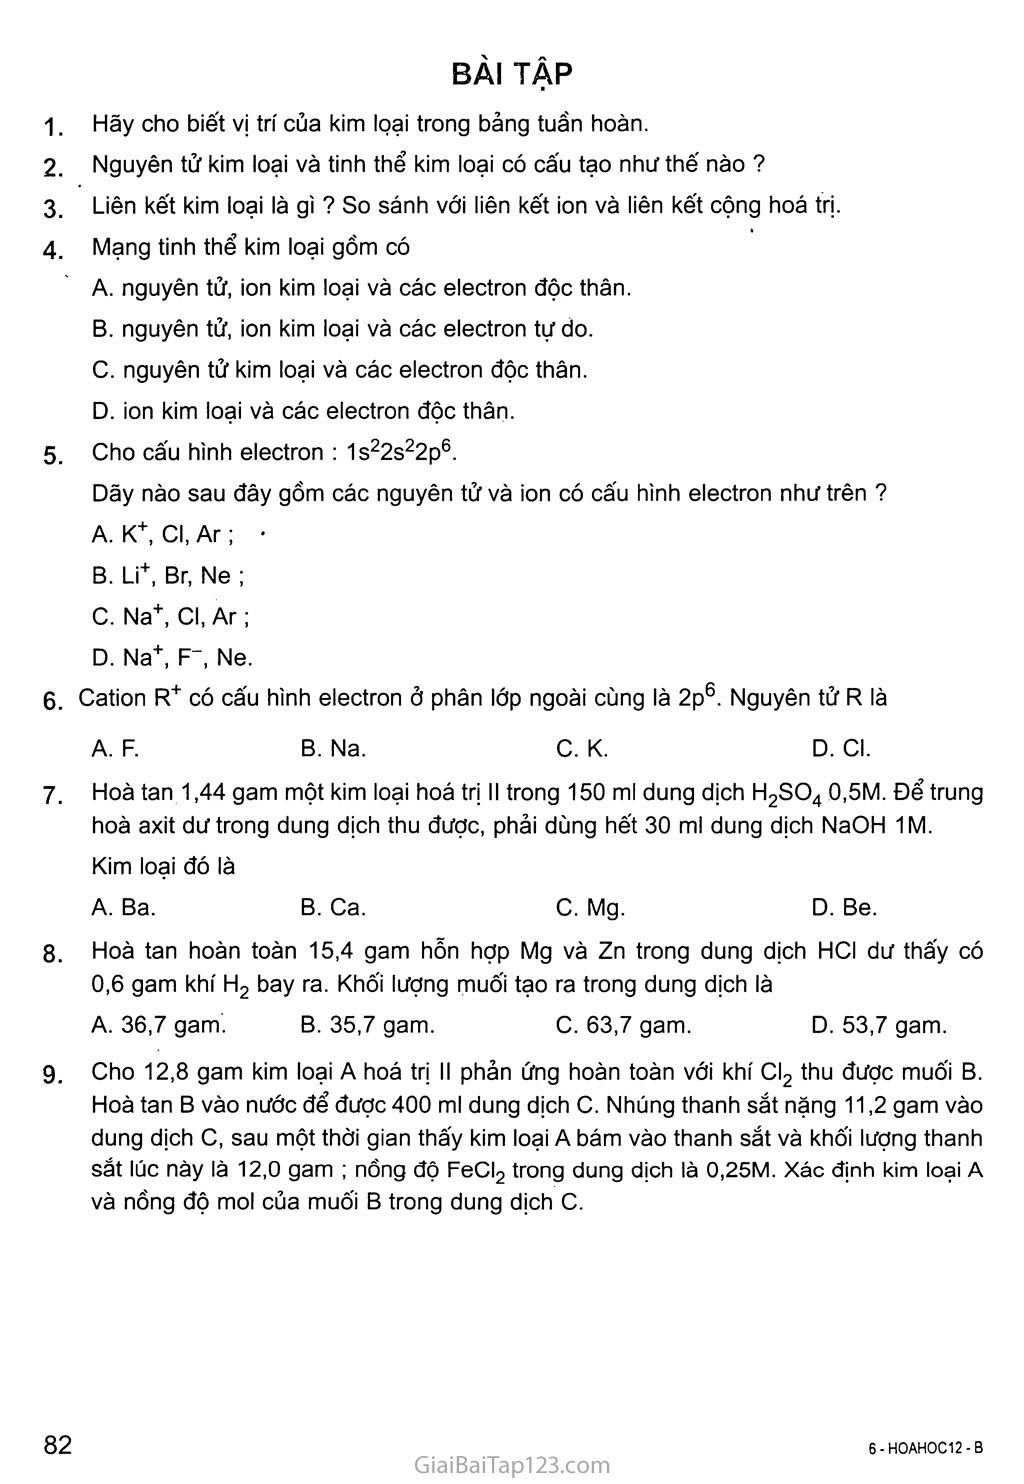 Bài 17: Vị trí của kim loại trong bảng tuần hoàn và cấu tạo của kim loại trang 4